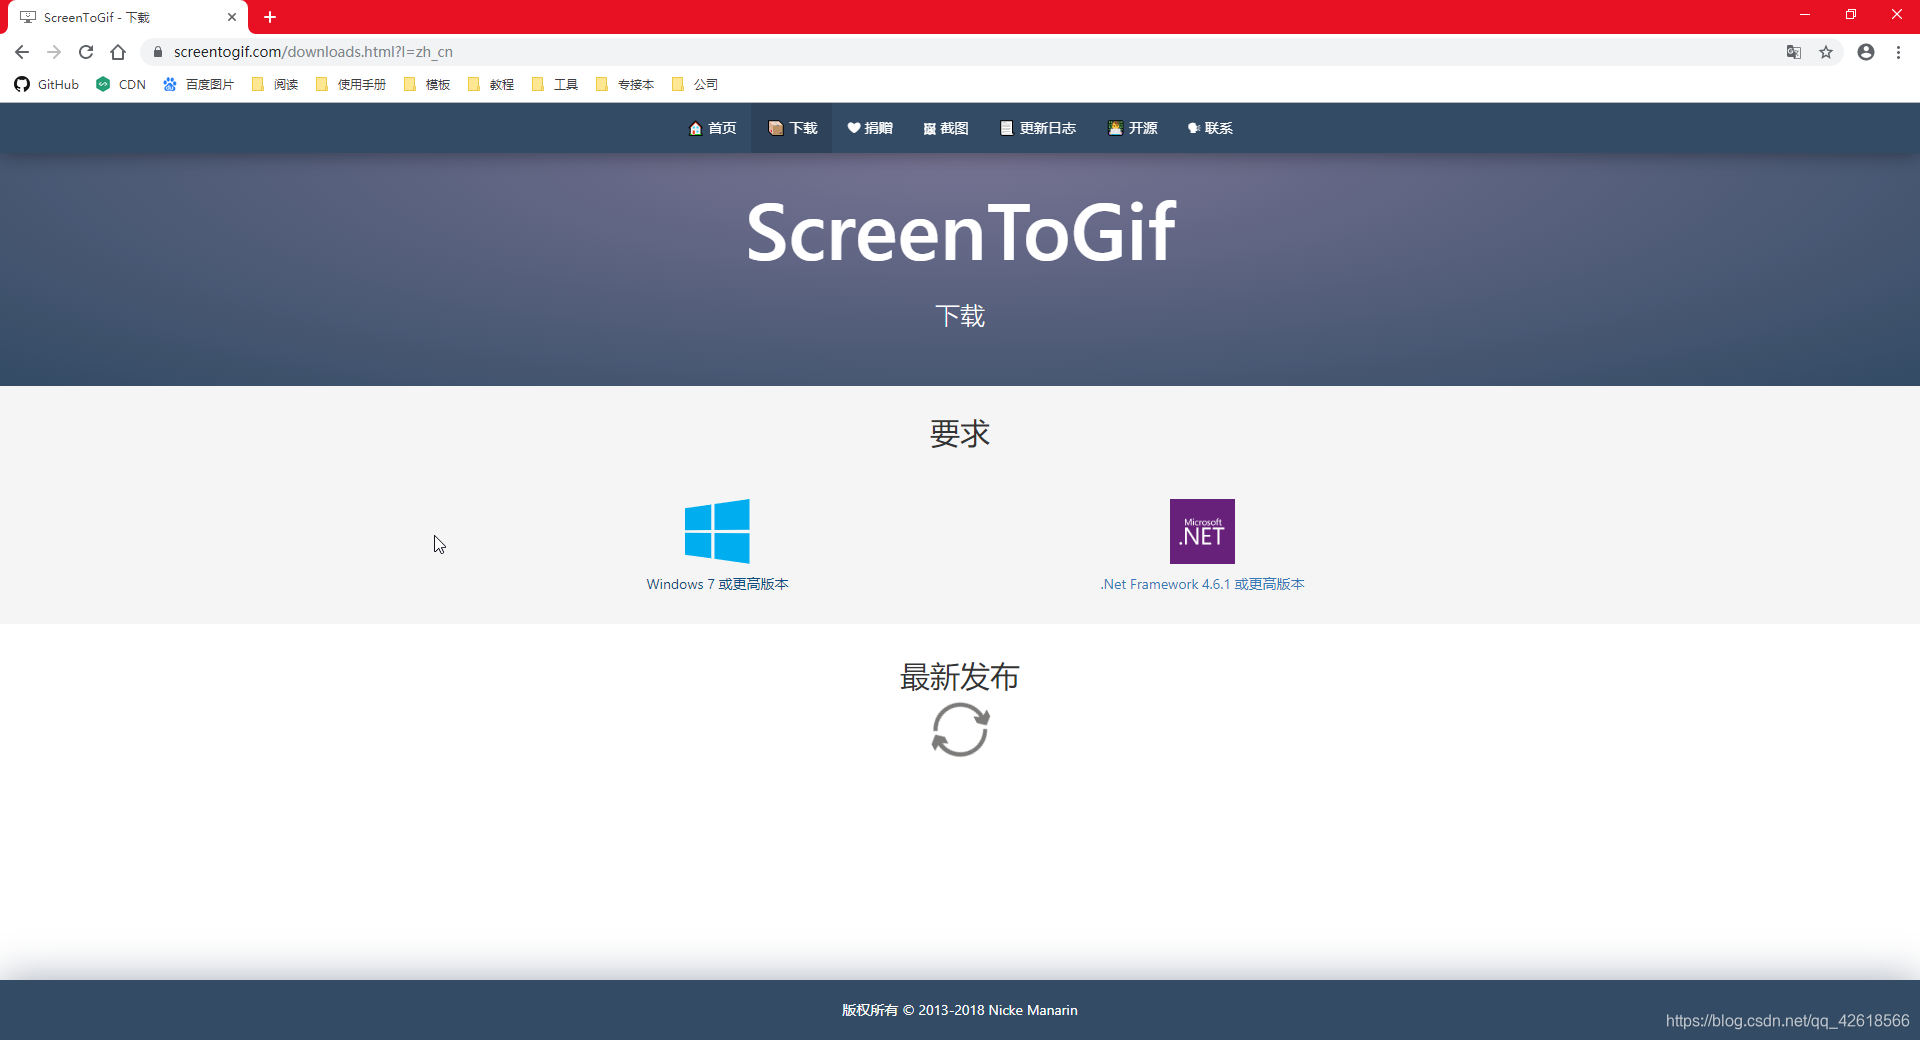 GIF123 - 开源免费绿色好用简单的录屏制作 GIF 动图工具 (小巧/支持公众号粘贴) - 异次元软件下载